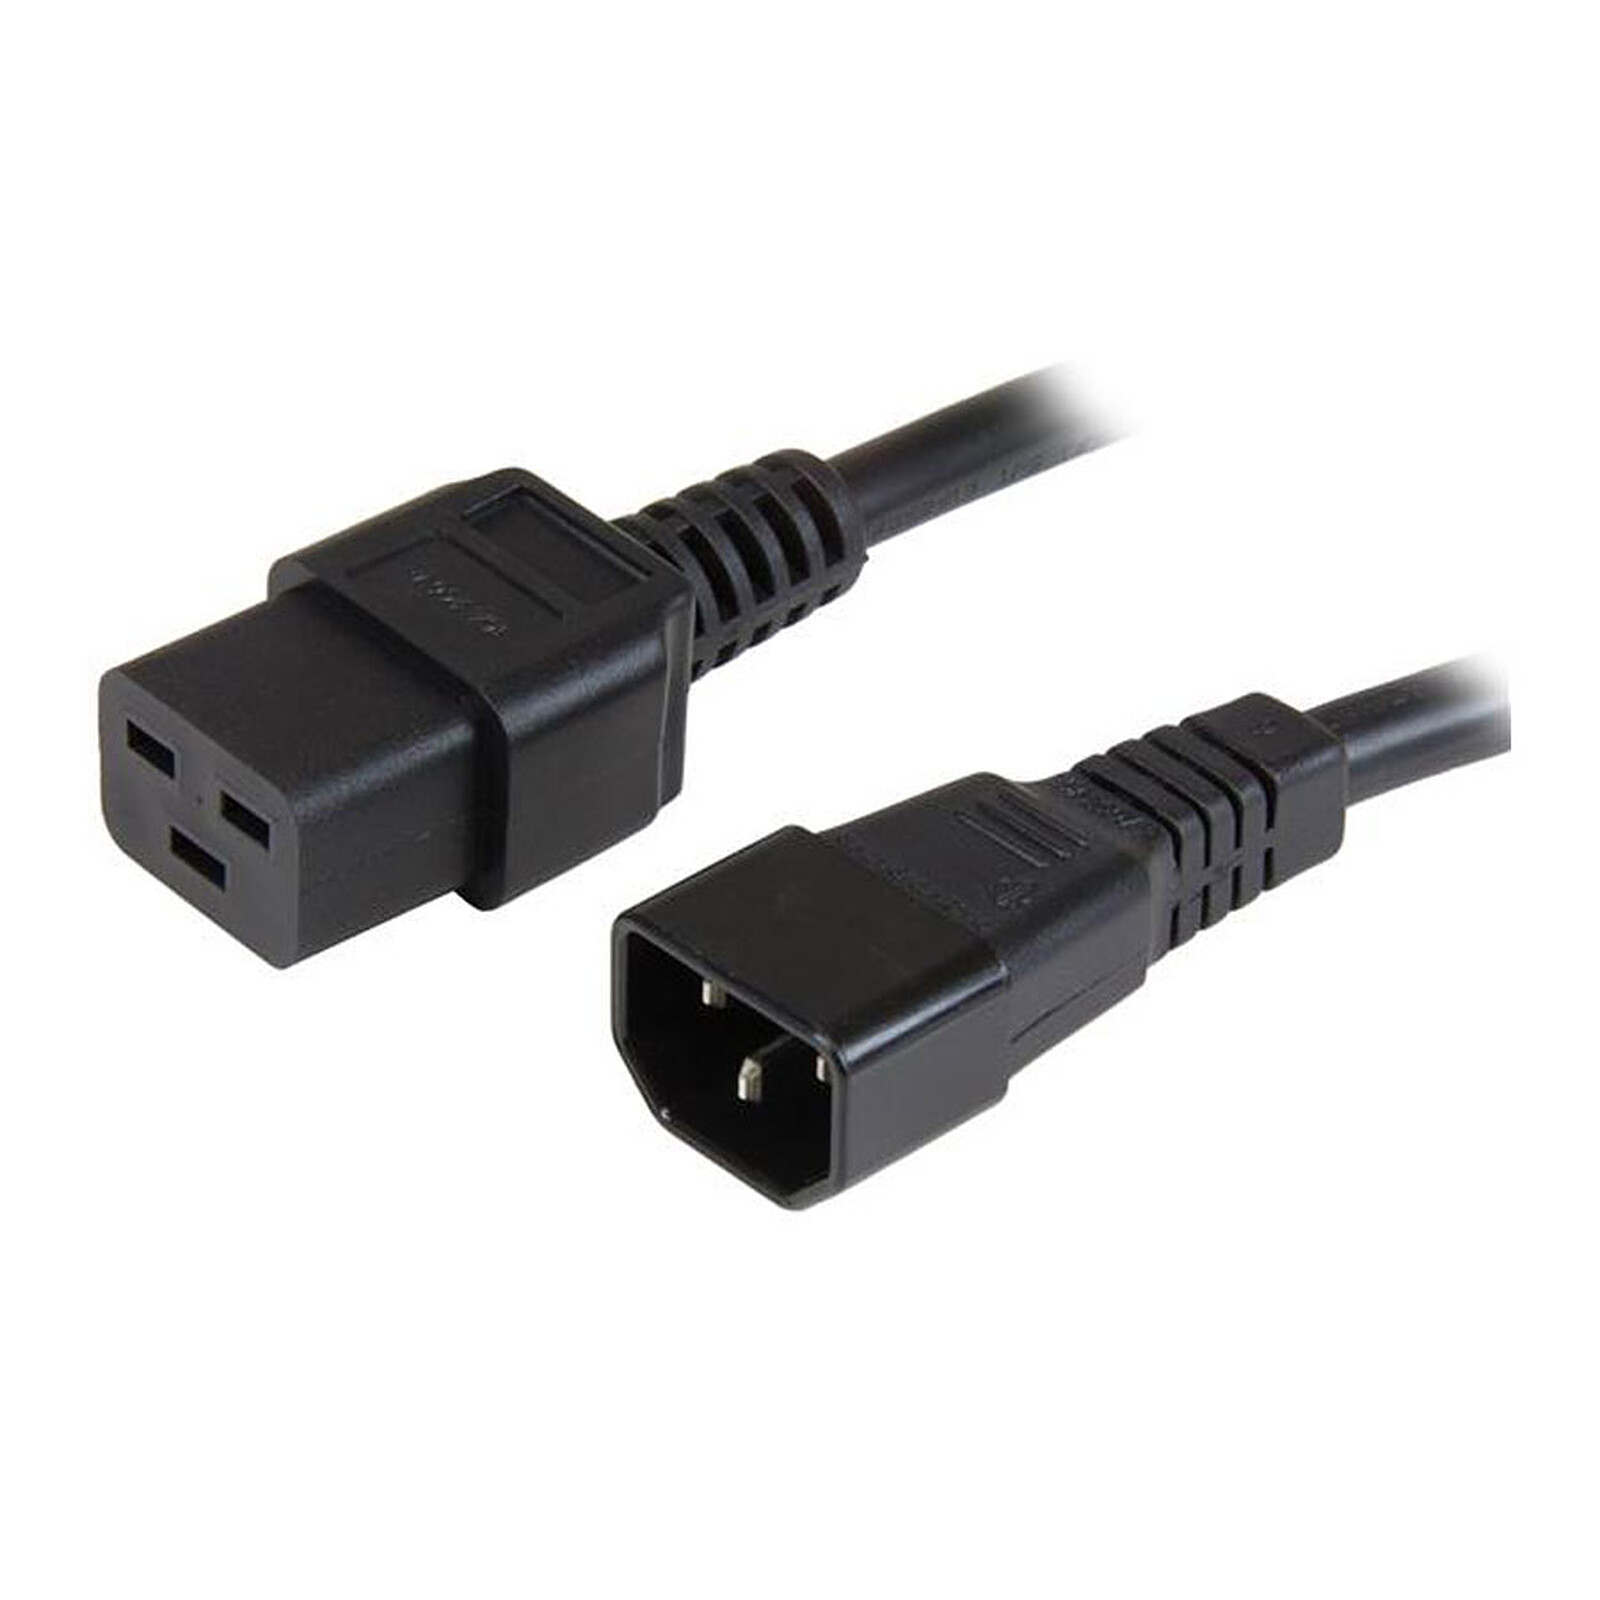 Rallonge d'alimentation pour PC, moniteur et onduleur (0.5 m) - (coloris  noir) - Câble Secteur - Garantie 3 ans LDLC